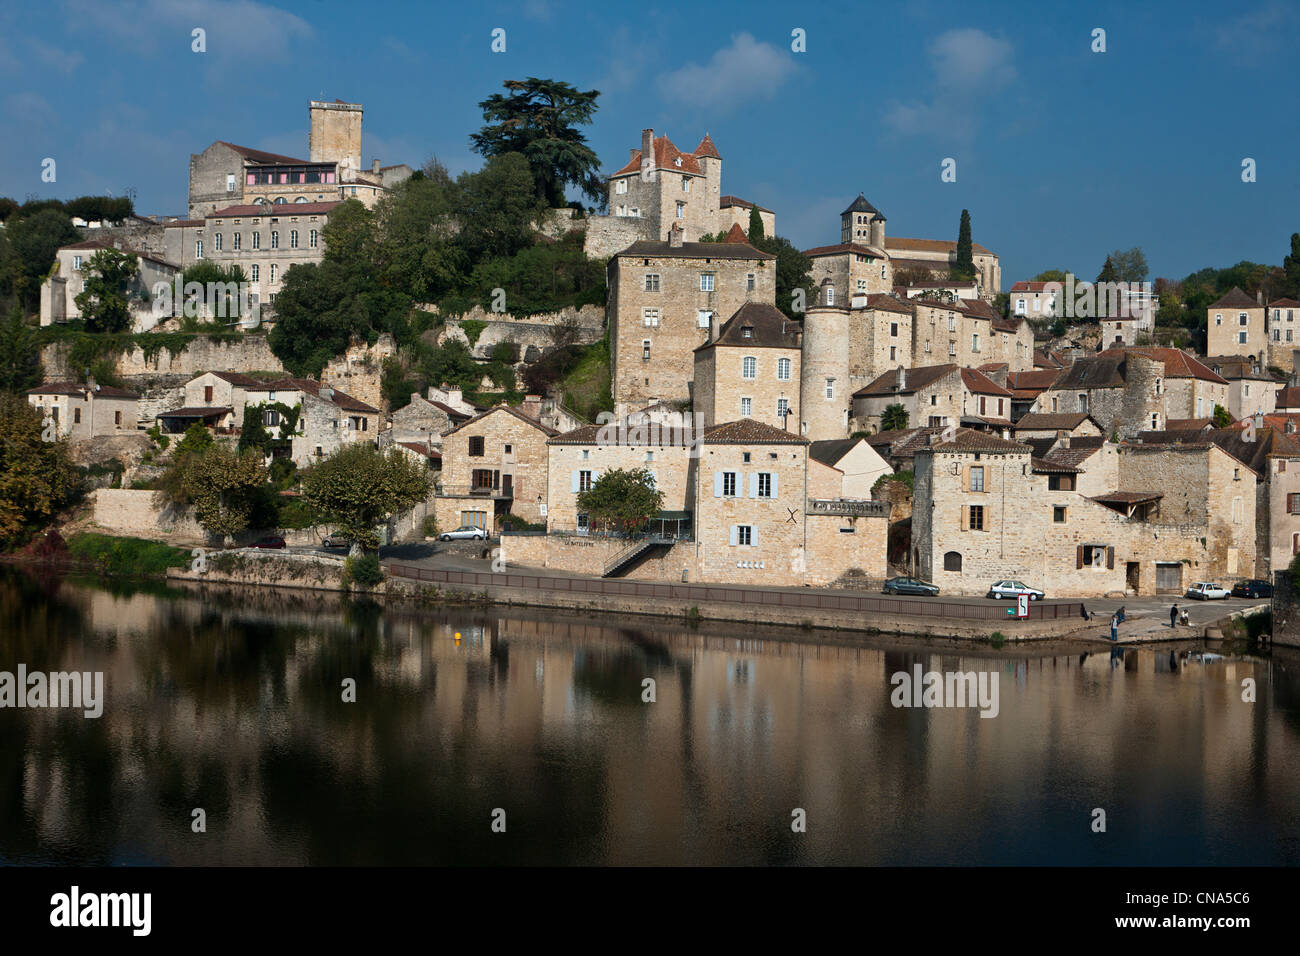 France, Lot, Puy-l'évêque, cité médiévale, le pied sur la rive droite du Lot, les vieilles maisons de la ville avec belles pierres Banque D'Images